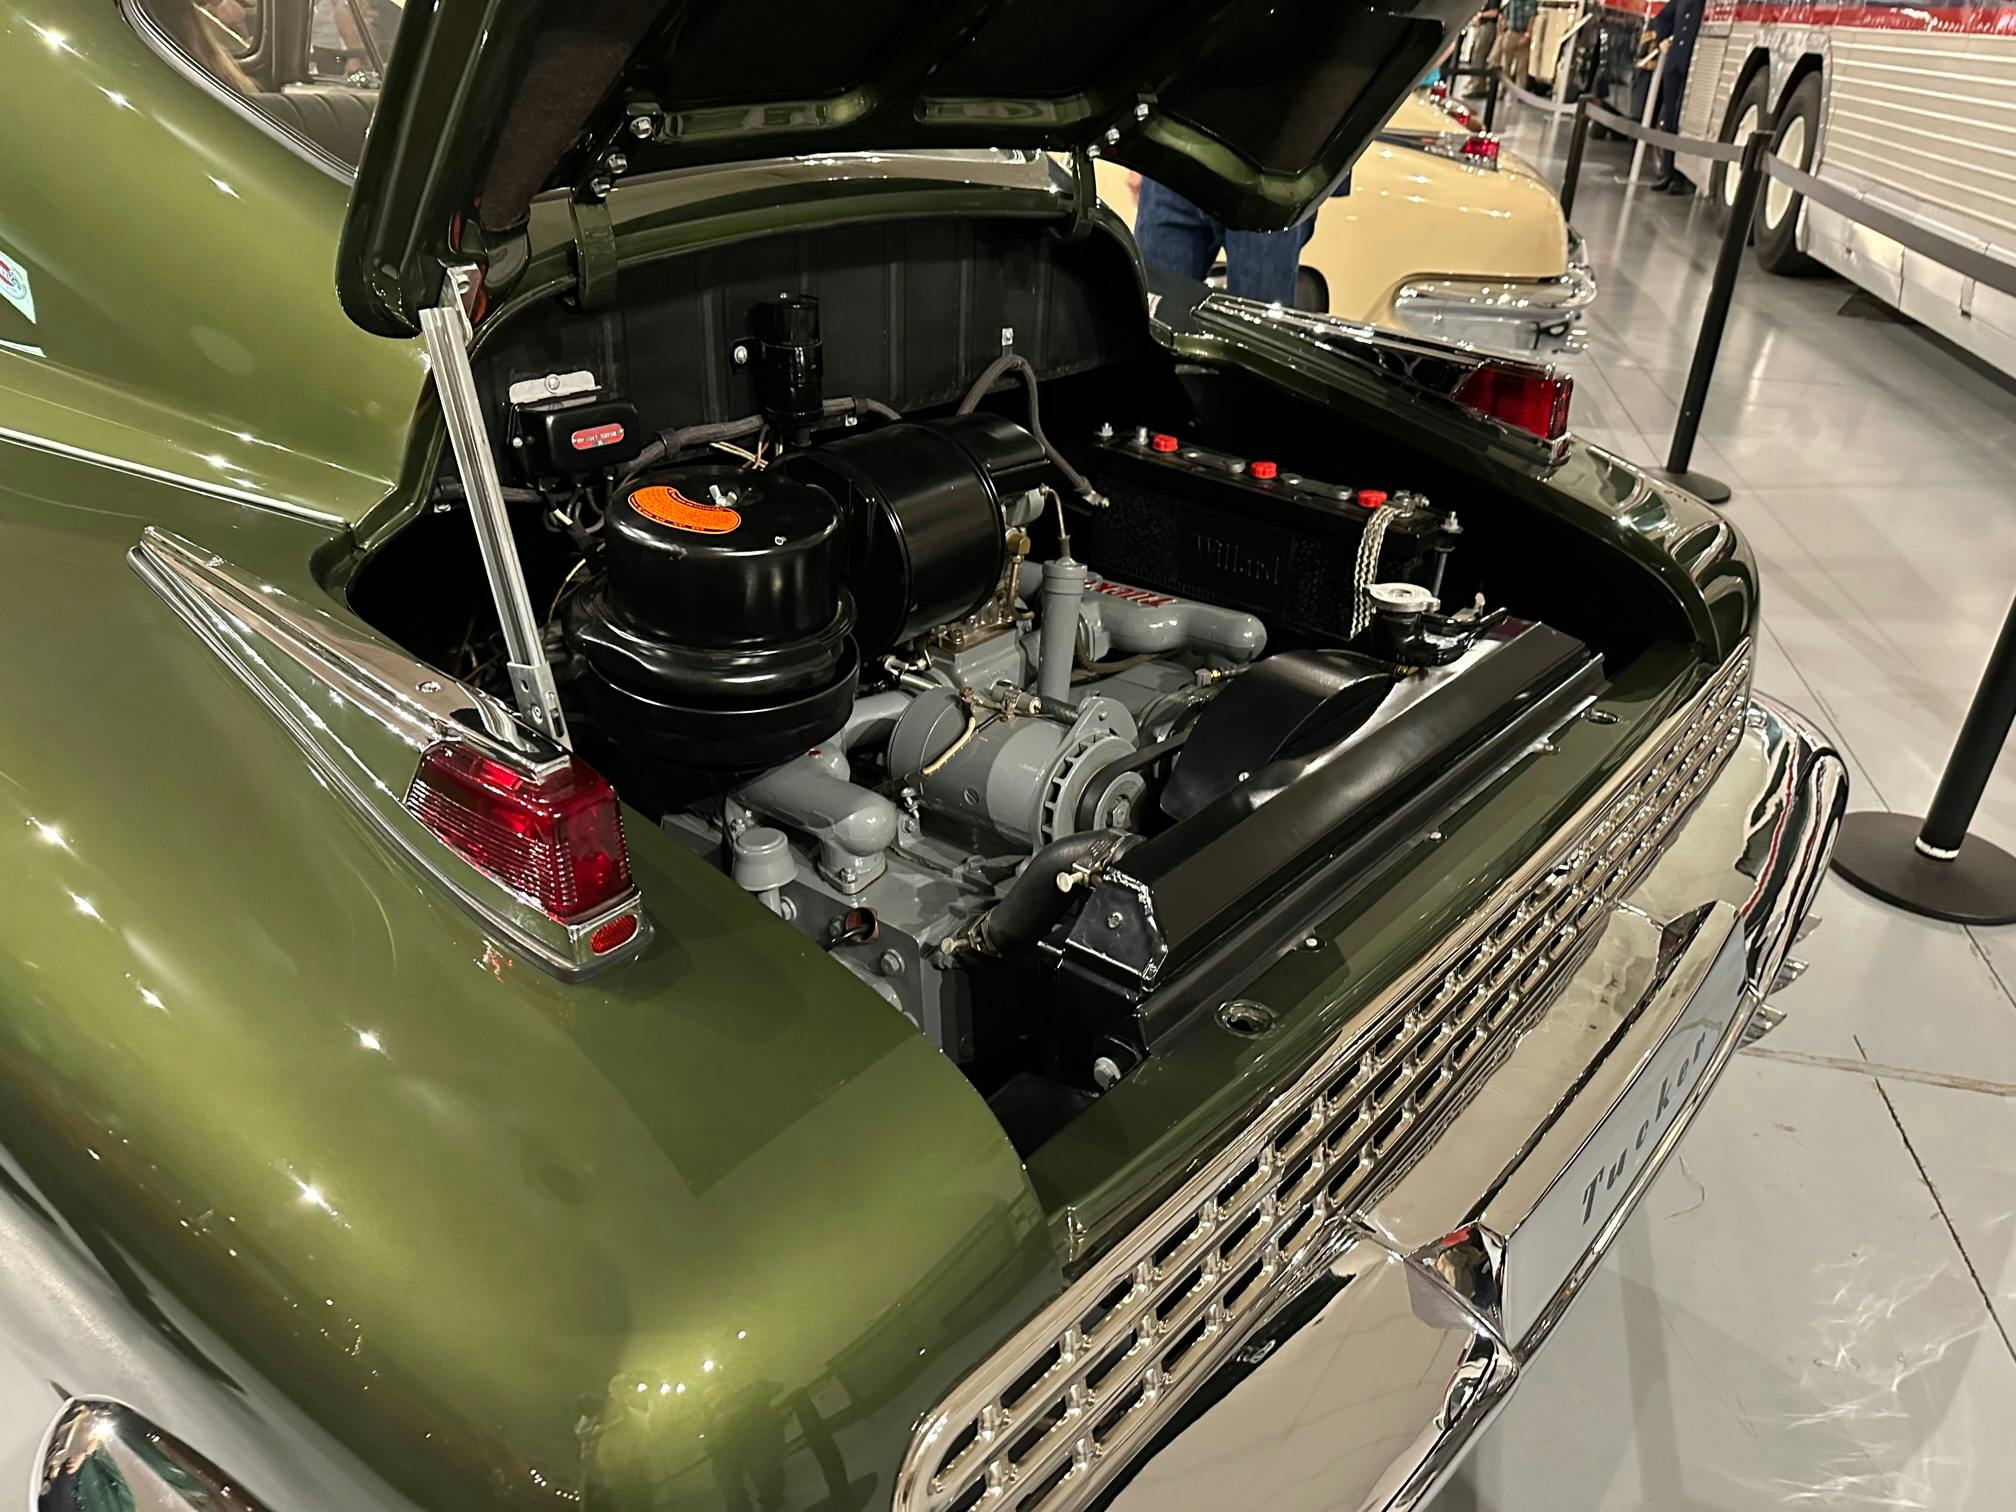 Tucker fan meetup rear engine display